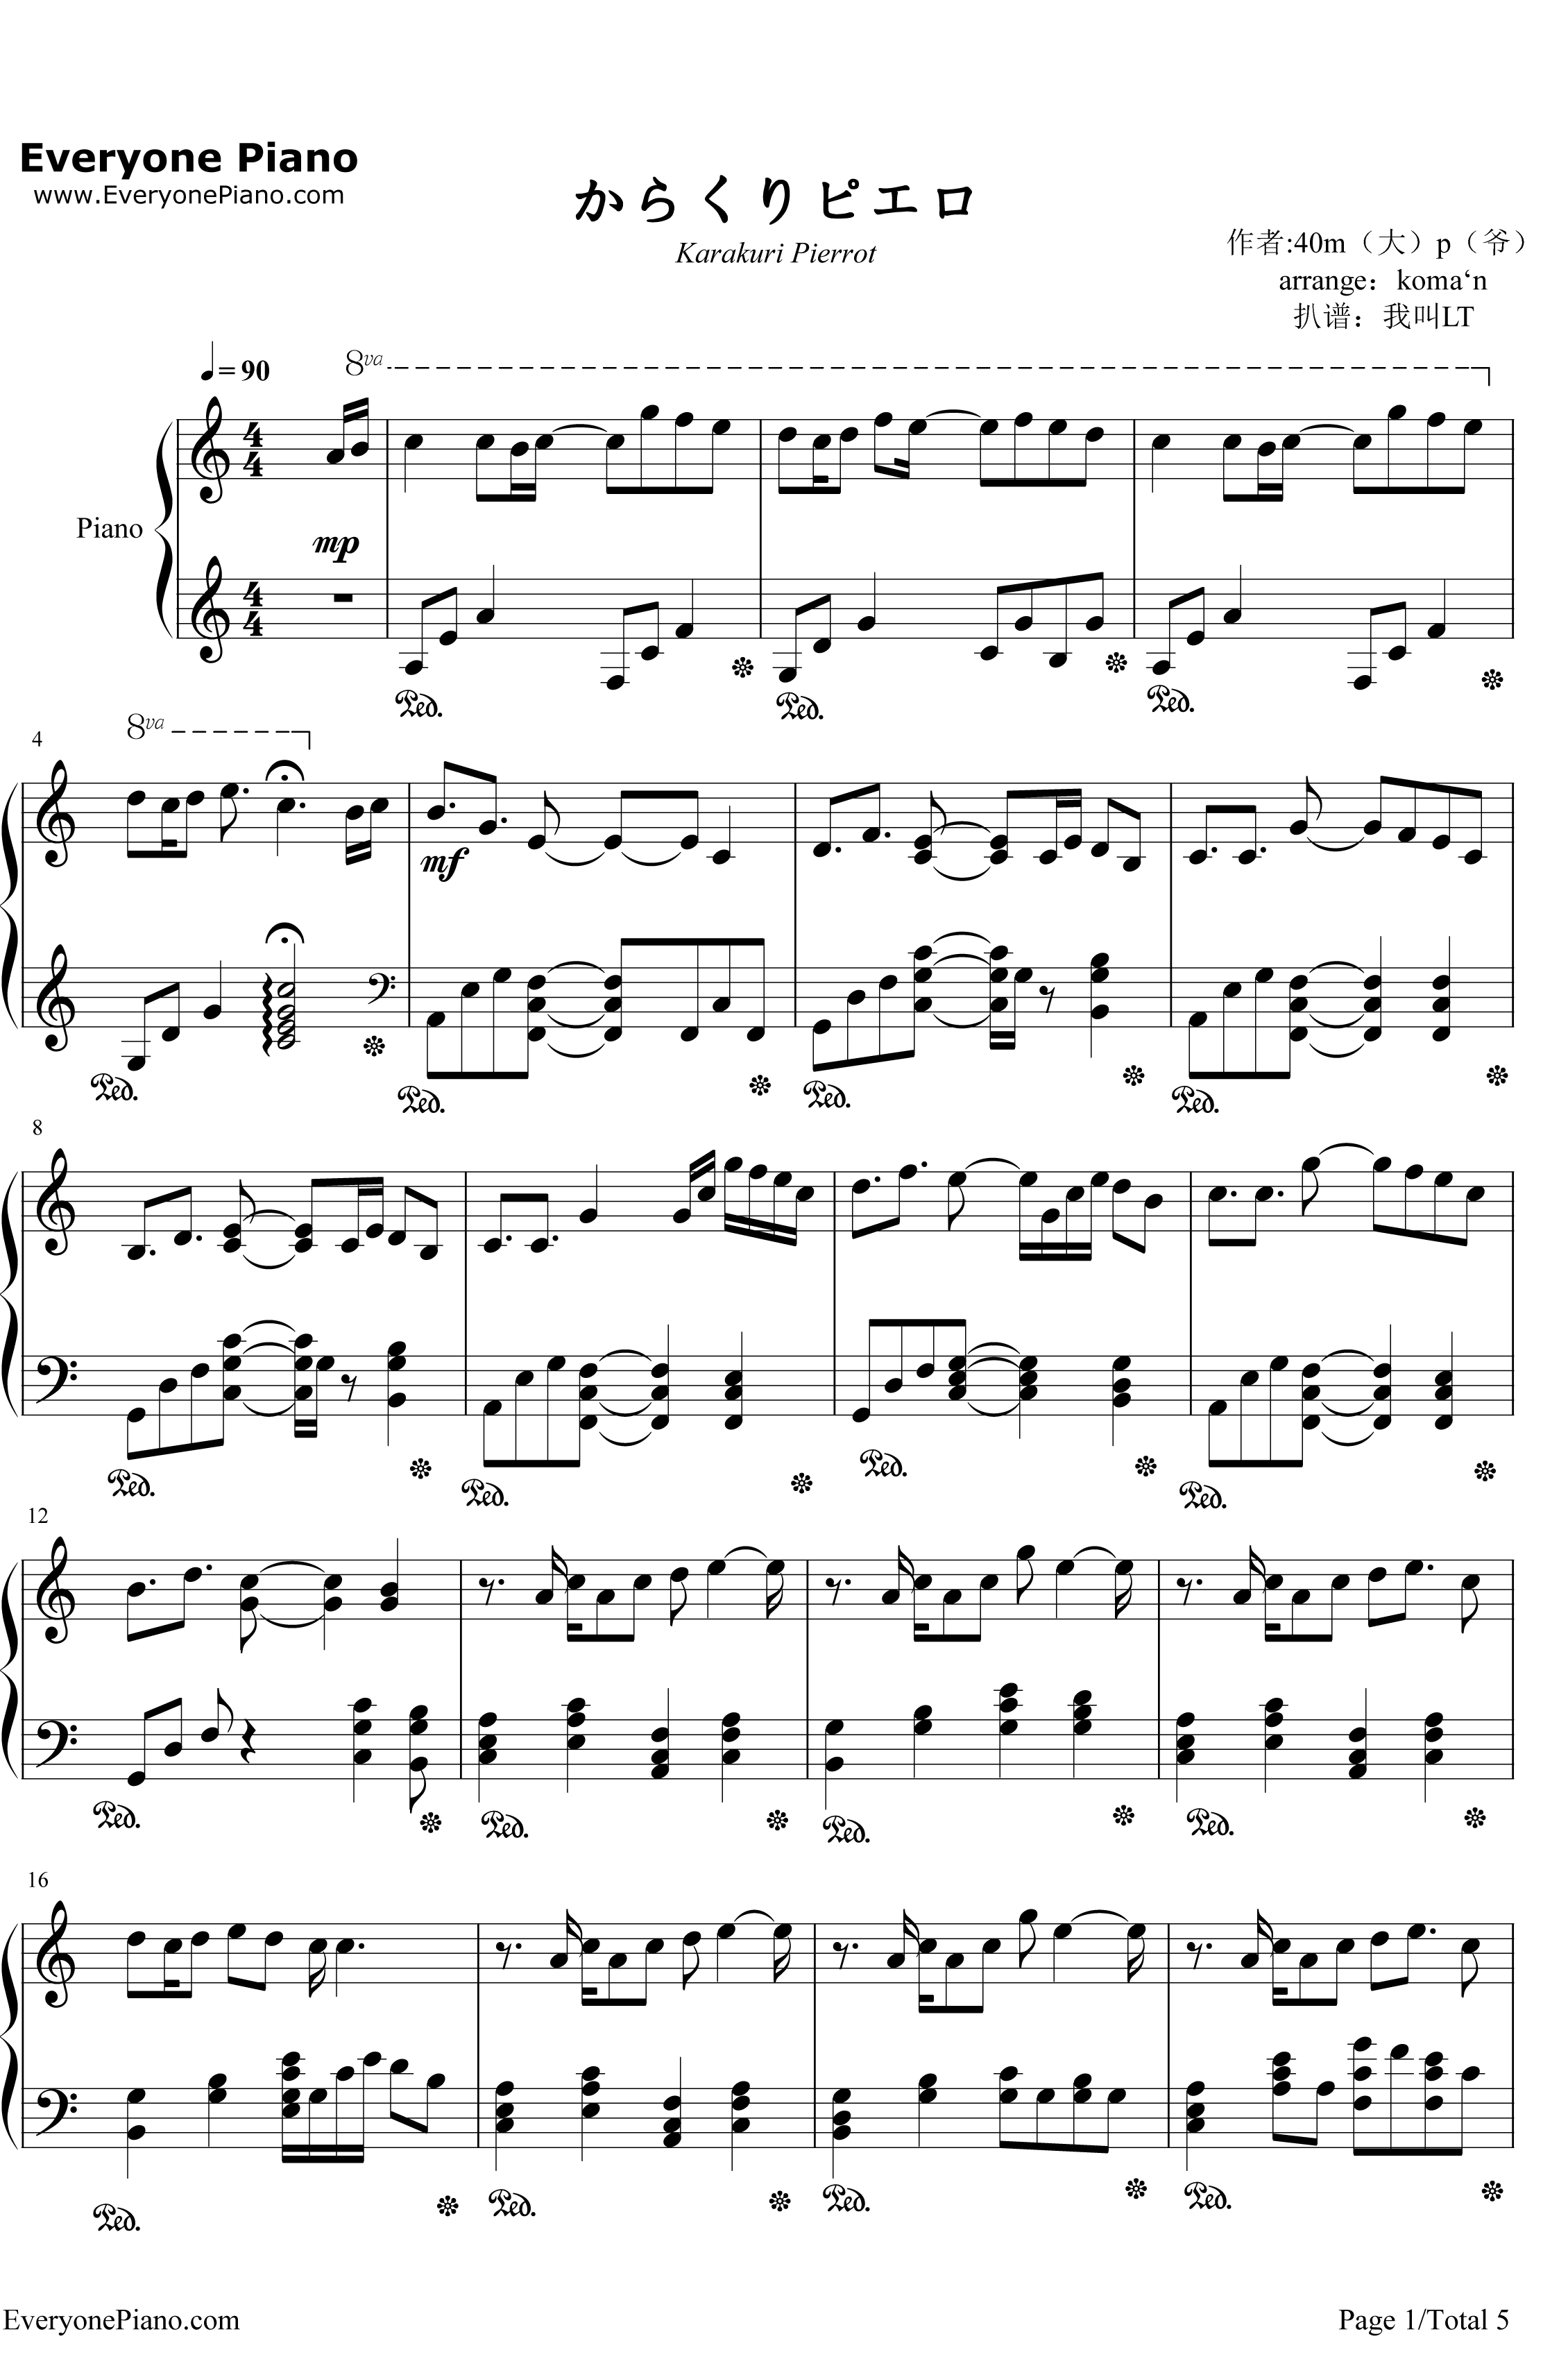 からくりピエロ钢琴谱-初音ミク1